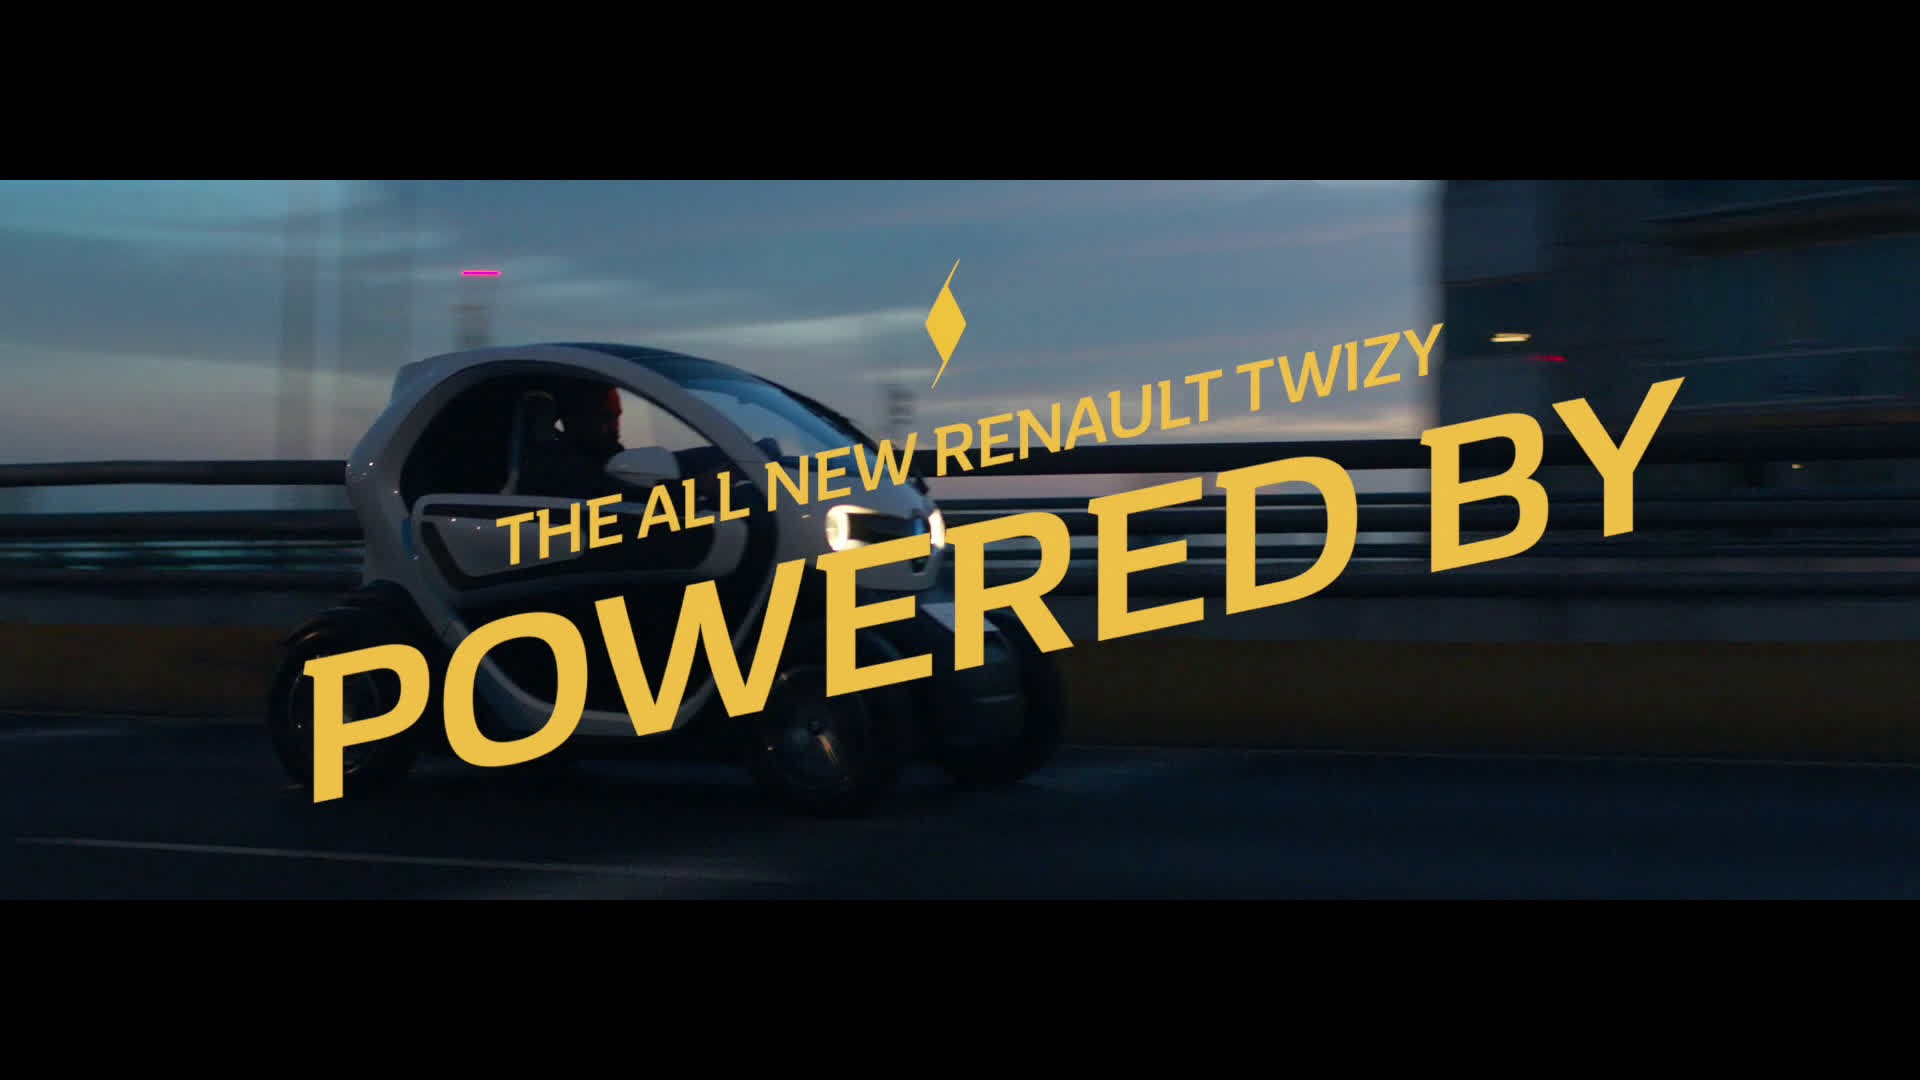 Twizy powered by